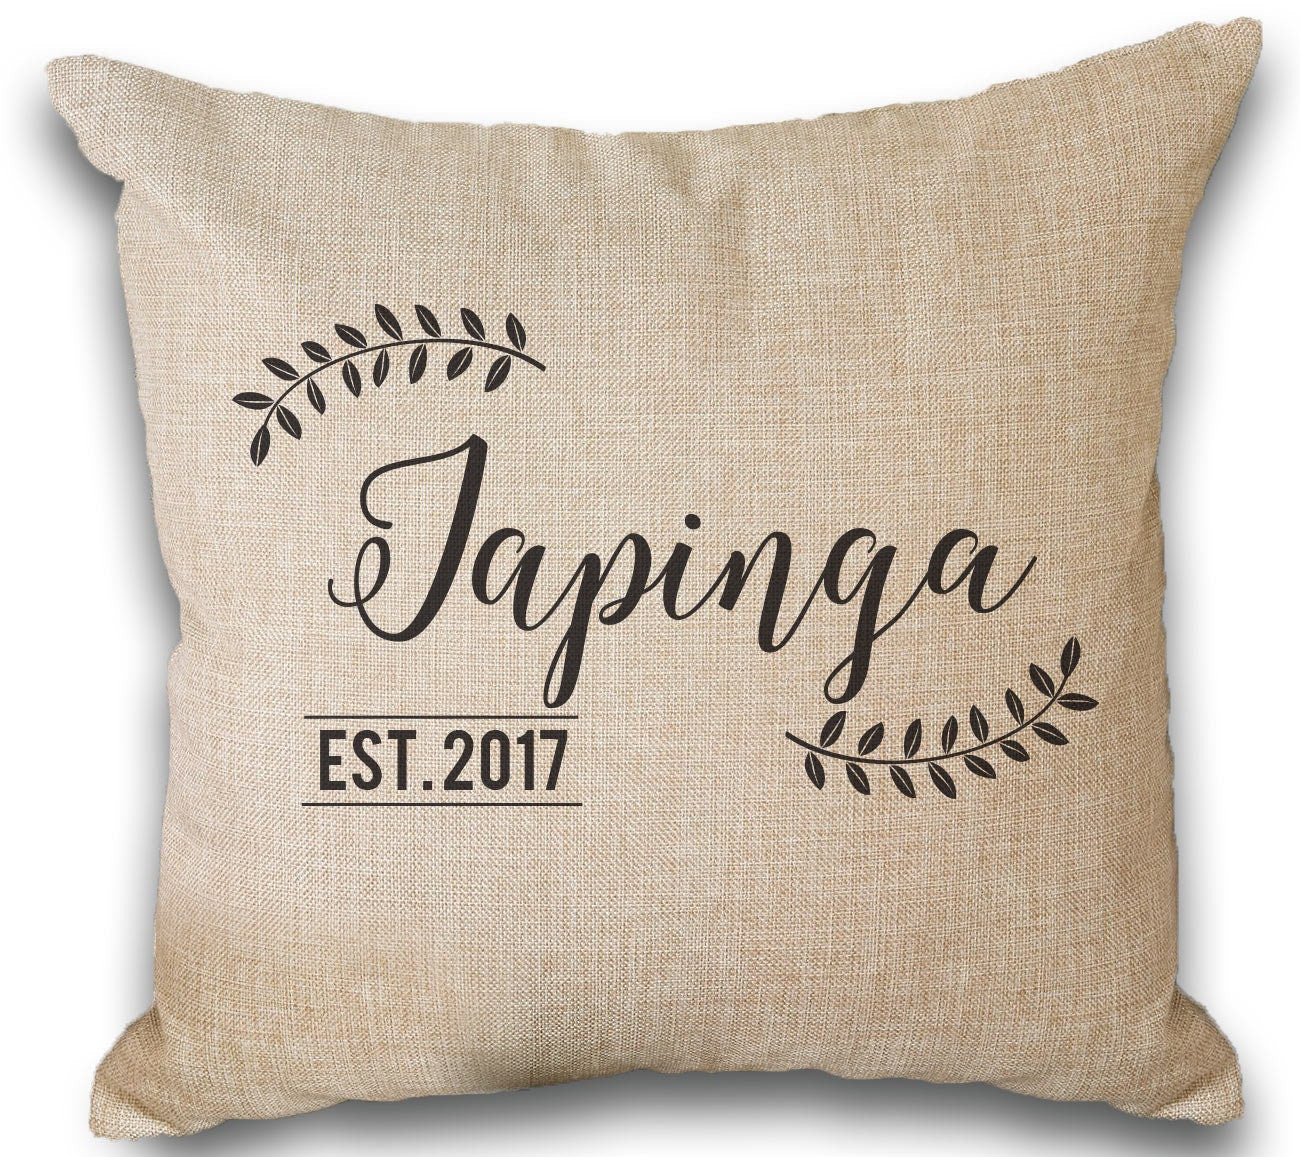 Personalized Monogram Throw Pillows